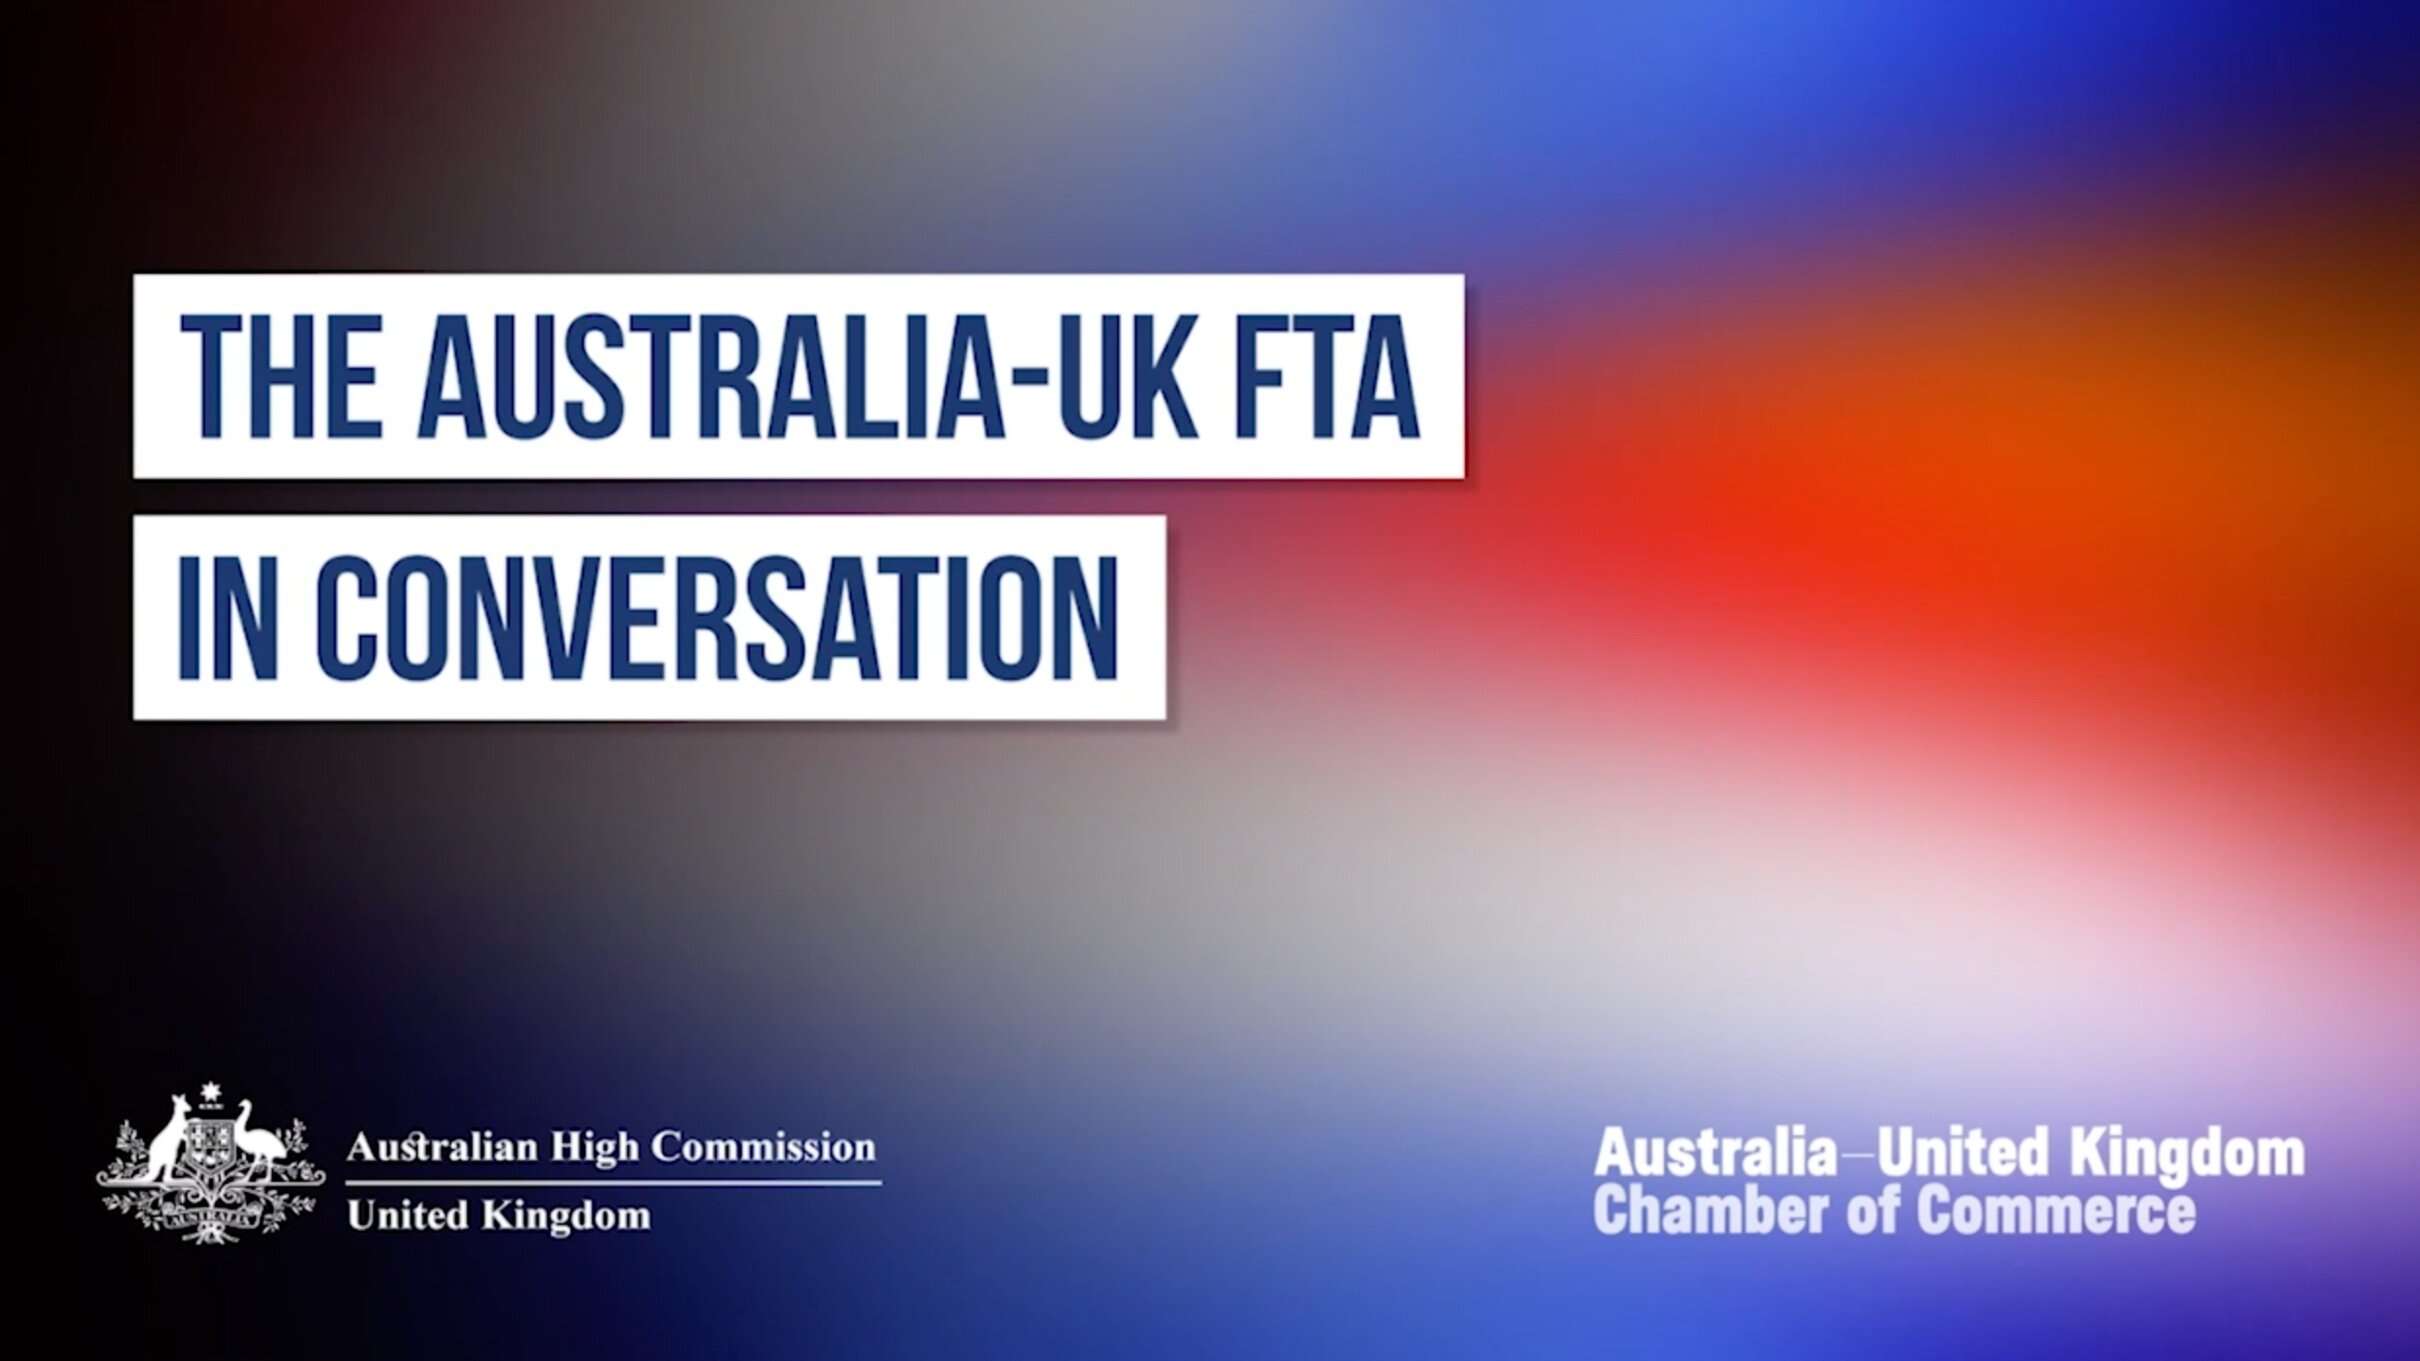 Australia-UK Chamber of Commerce